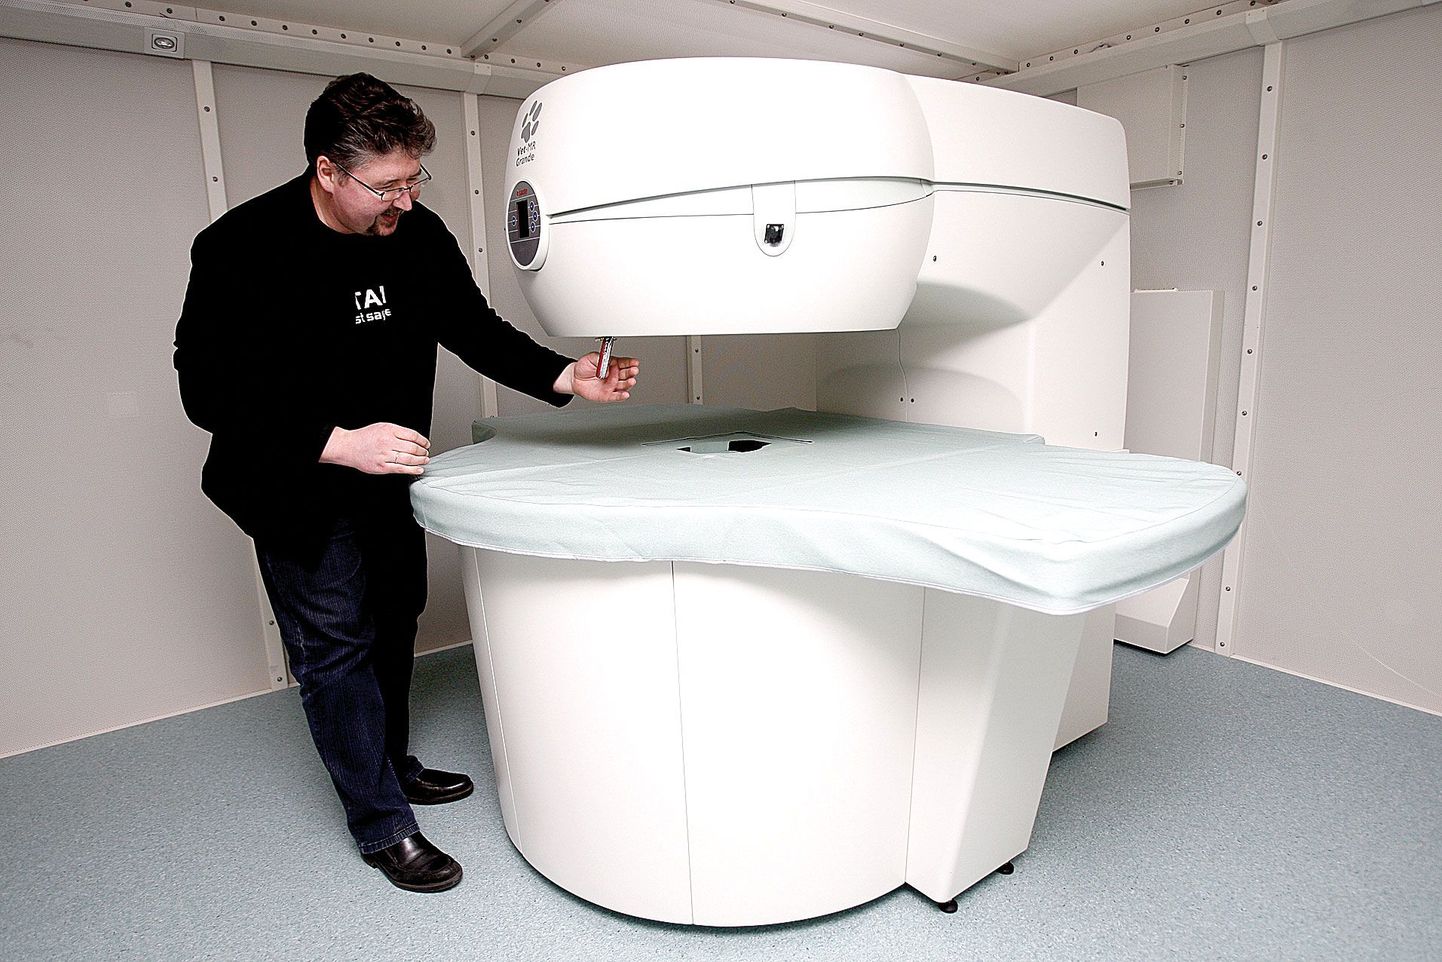 Eesti Maaülikooli loomakliiniku juhataja Kalmer Kalmus näitab taskunoa abil tomograafi püsimagneti tugevust.